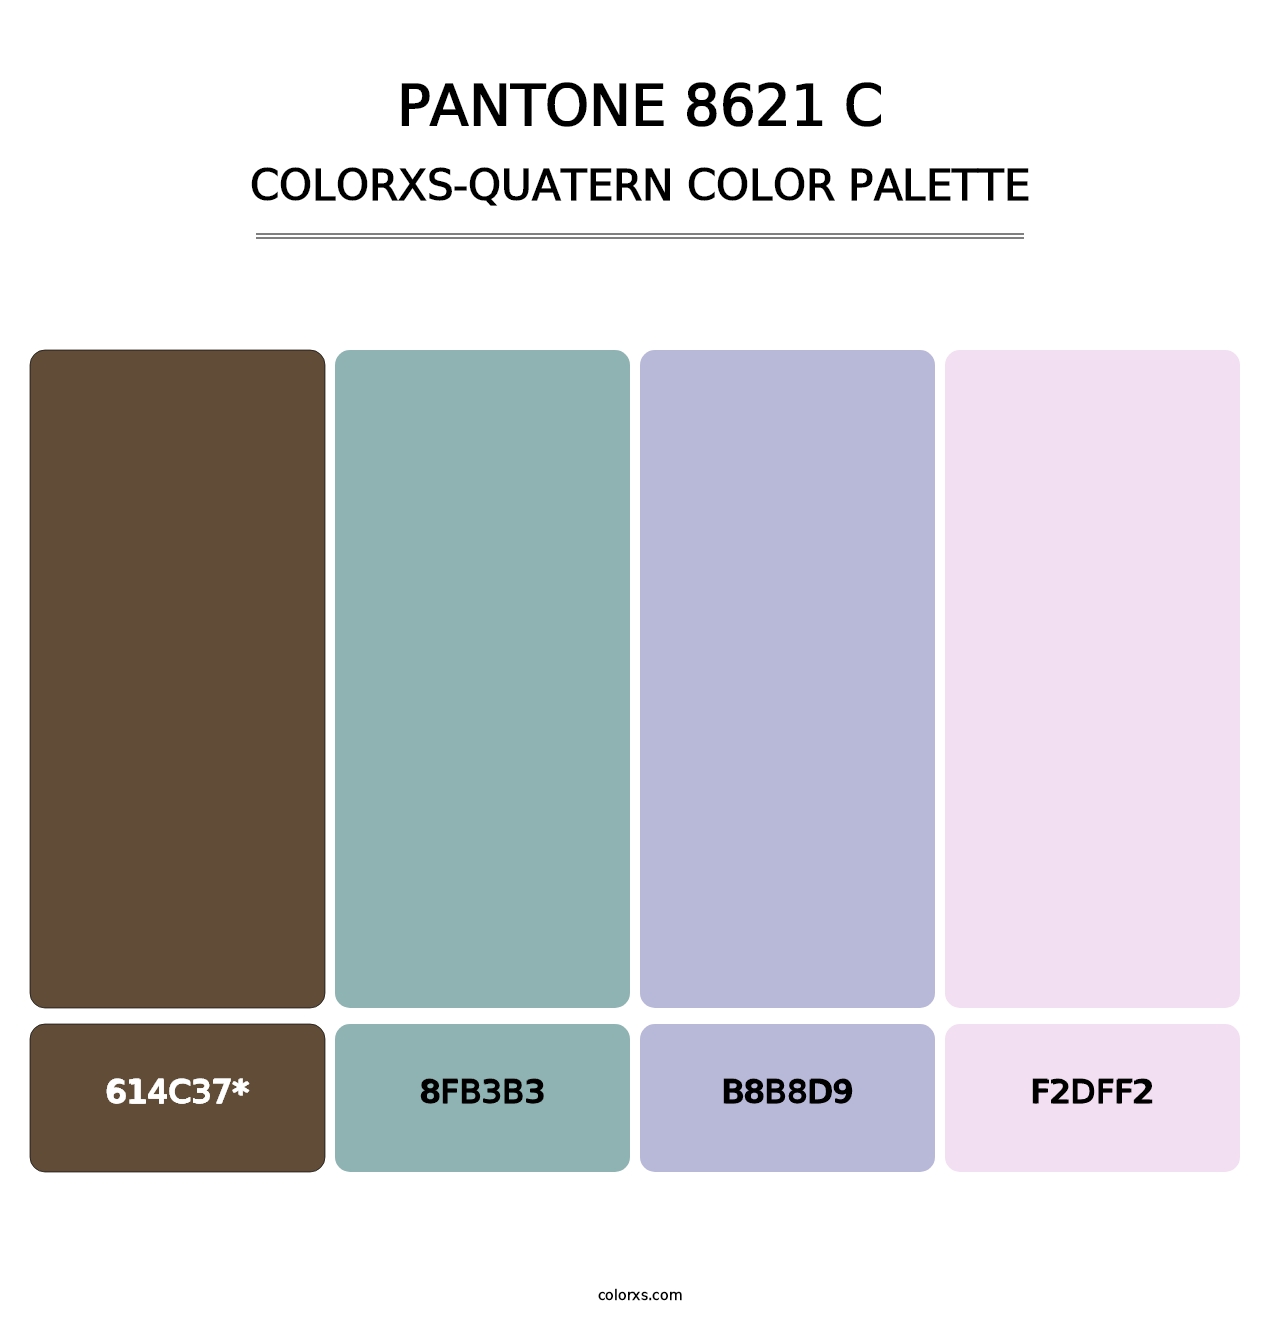 PANTONE 8621 C - Colorxs Quatern Palette